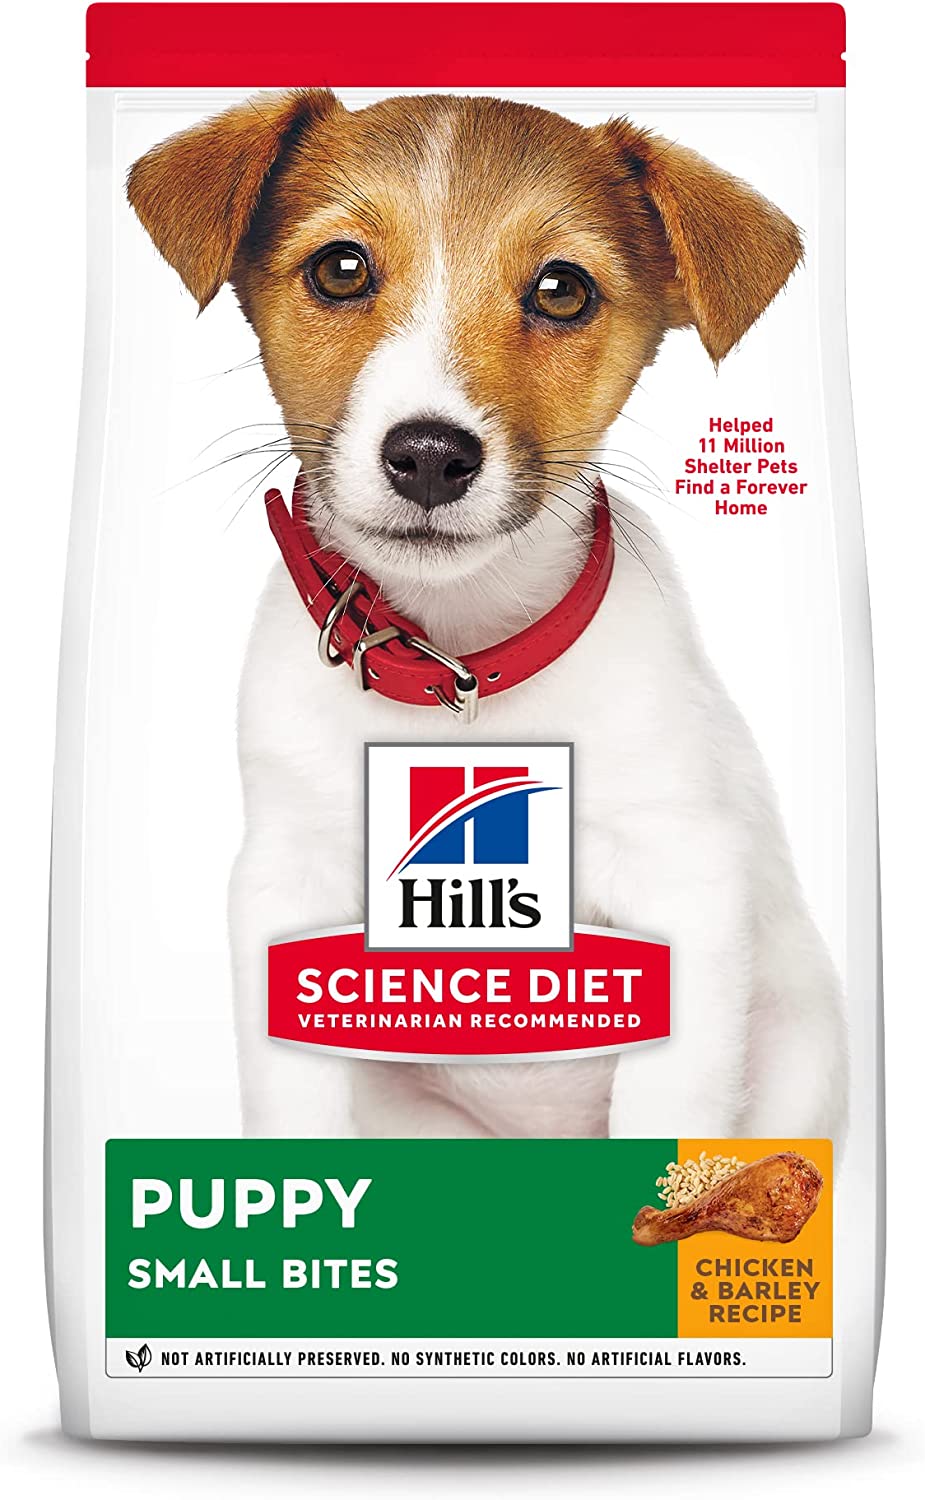 Science Diet Puppy Food